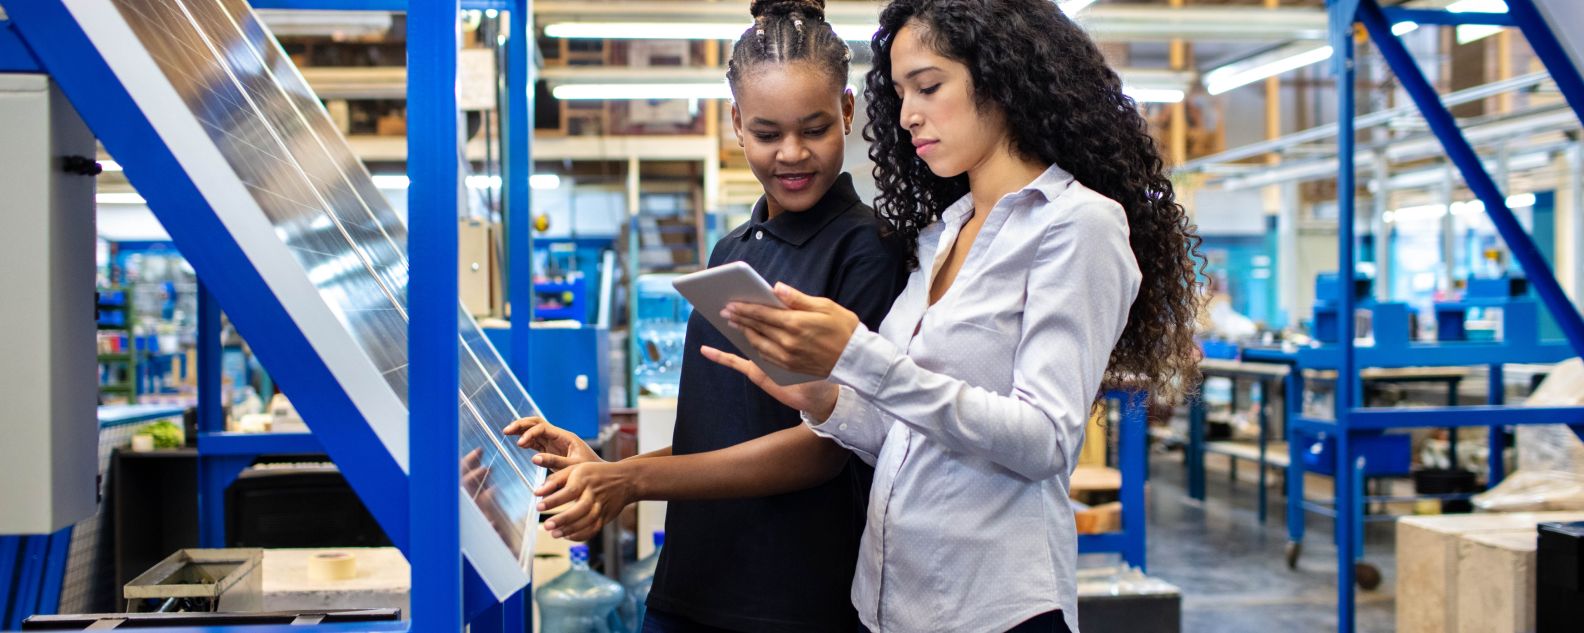 Supervisor dan pekerja wanita melihat tablet digital di lantai toko pabrik